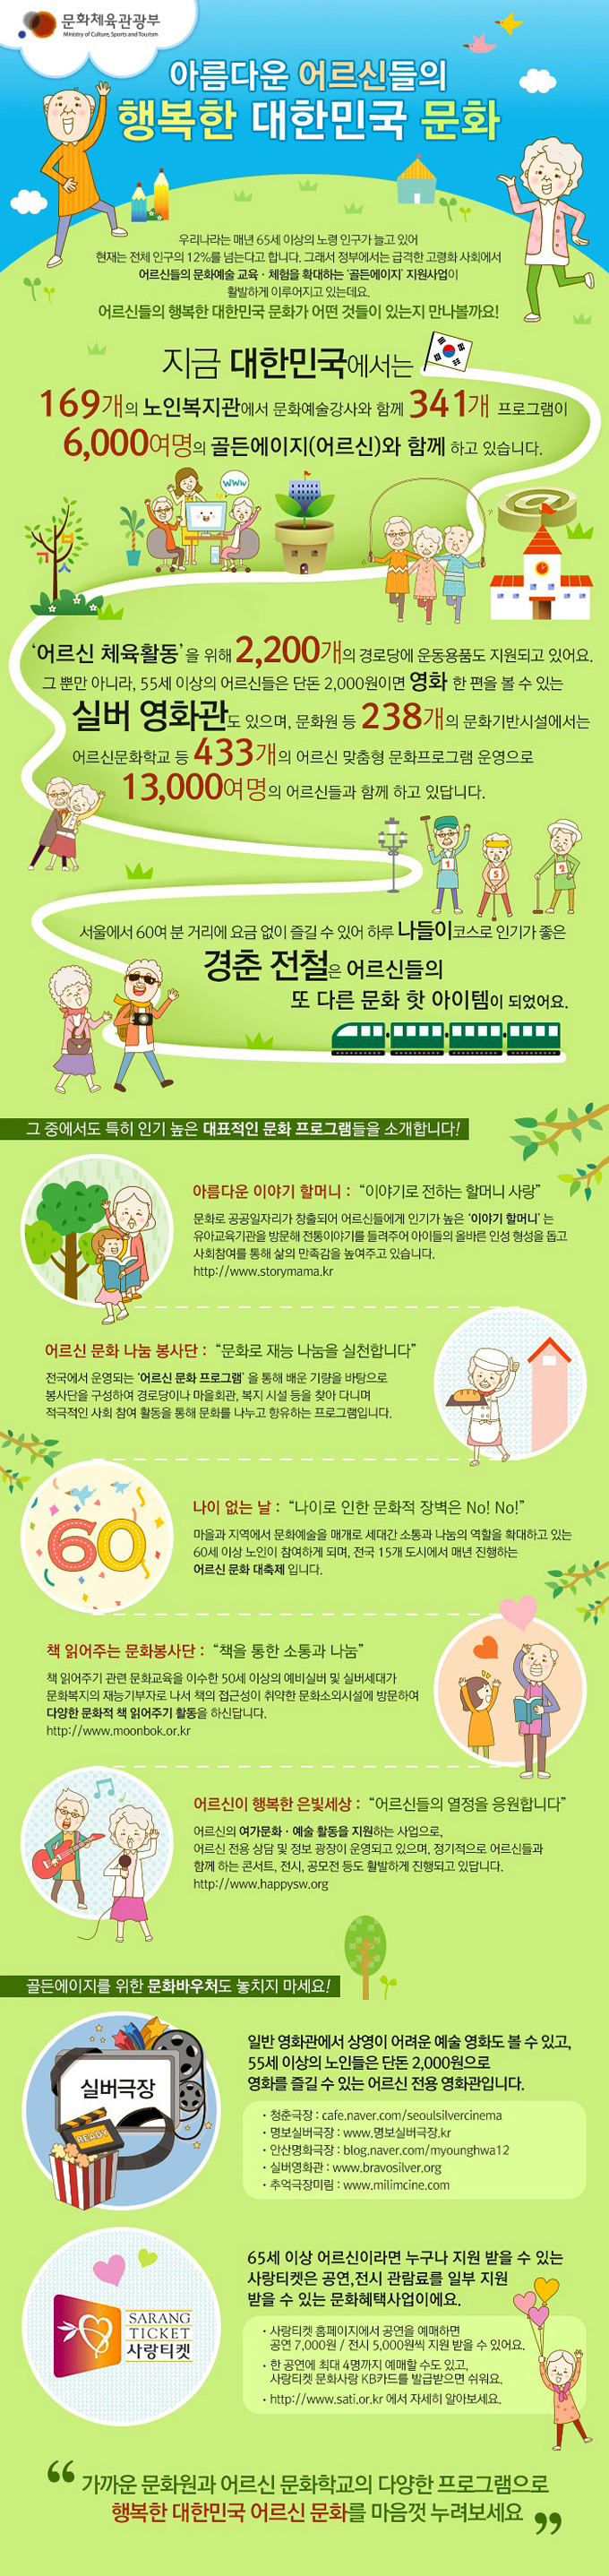 아름다운 어르신들의 행복한 대한민국 문화